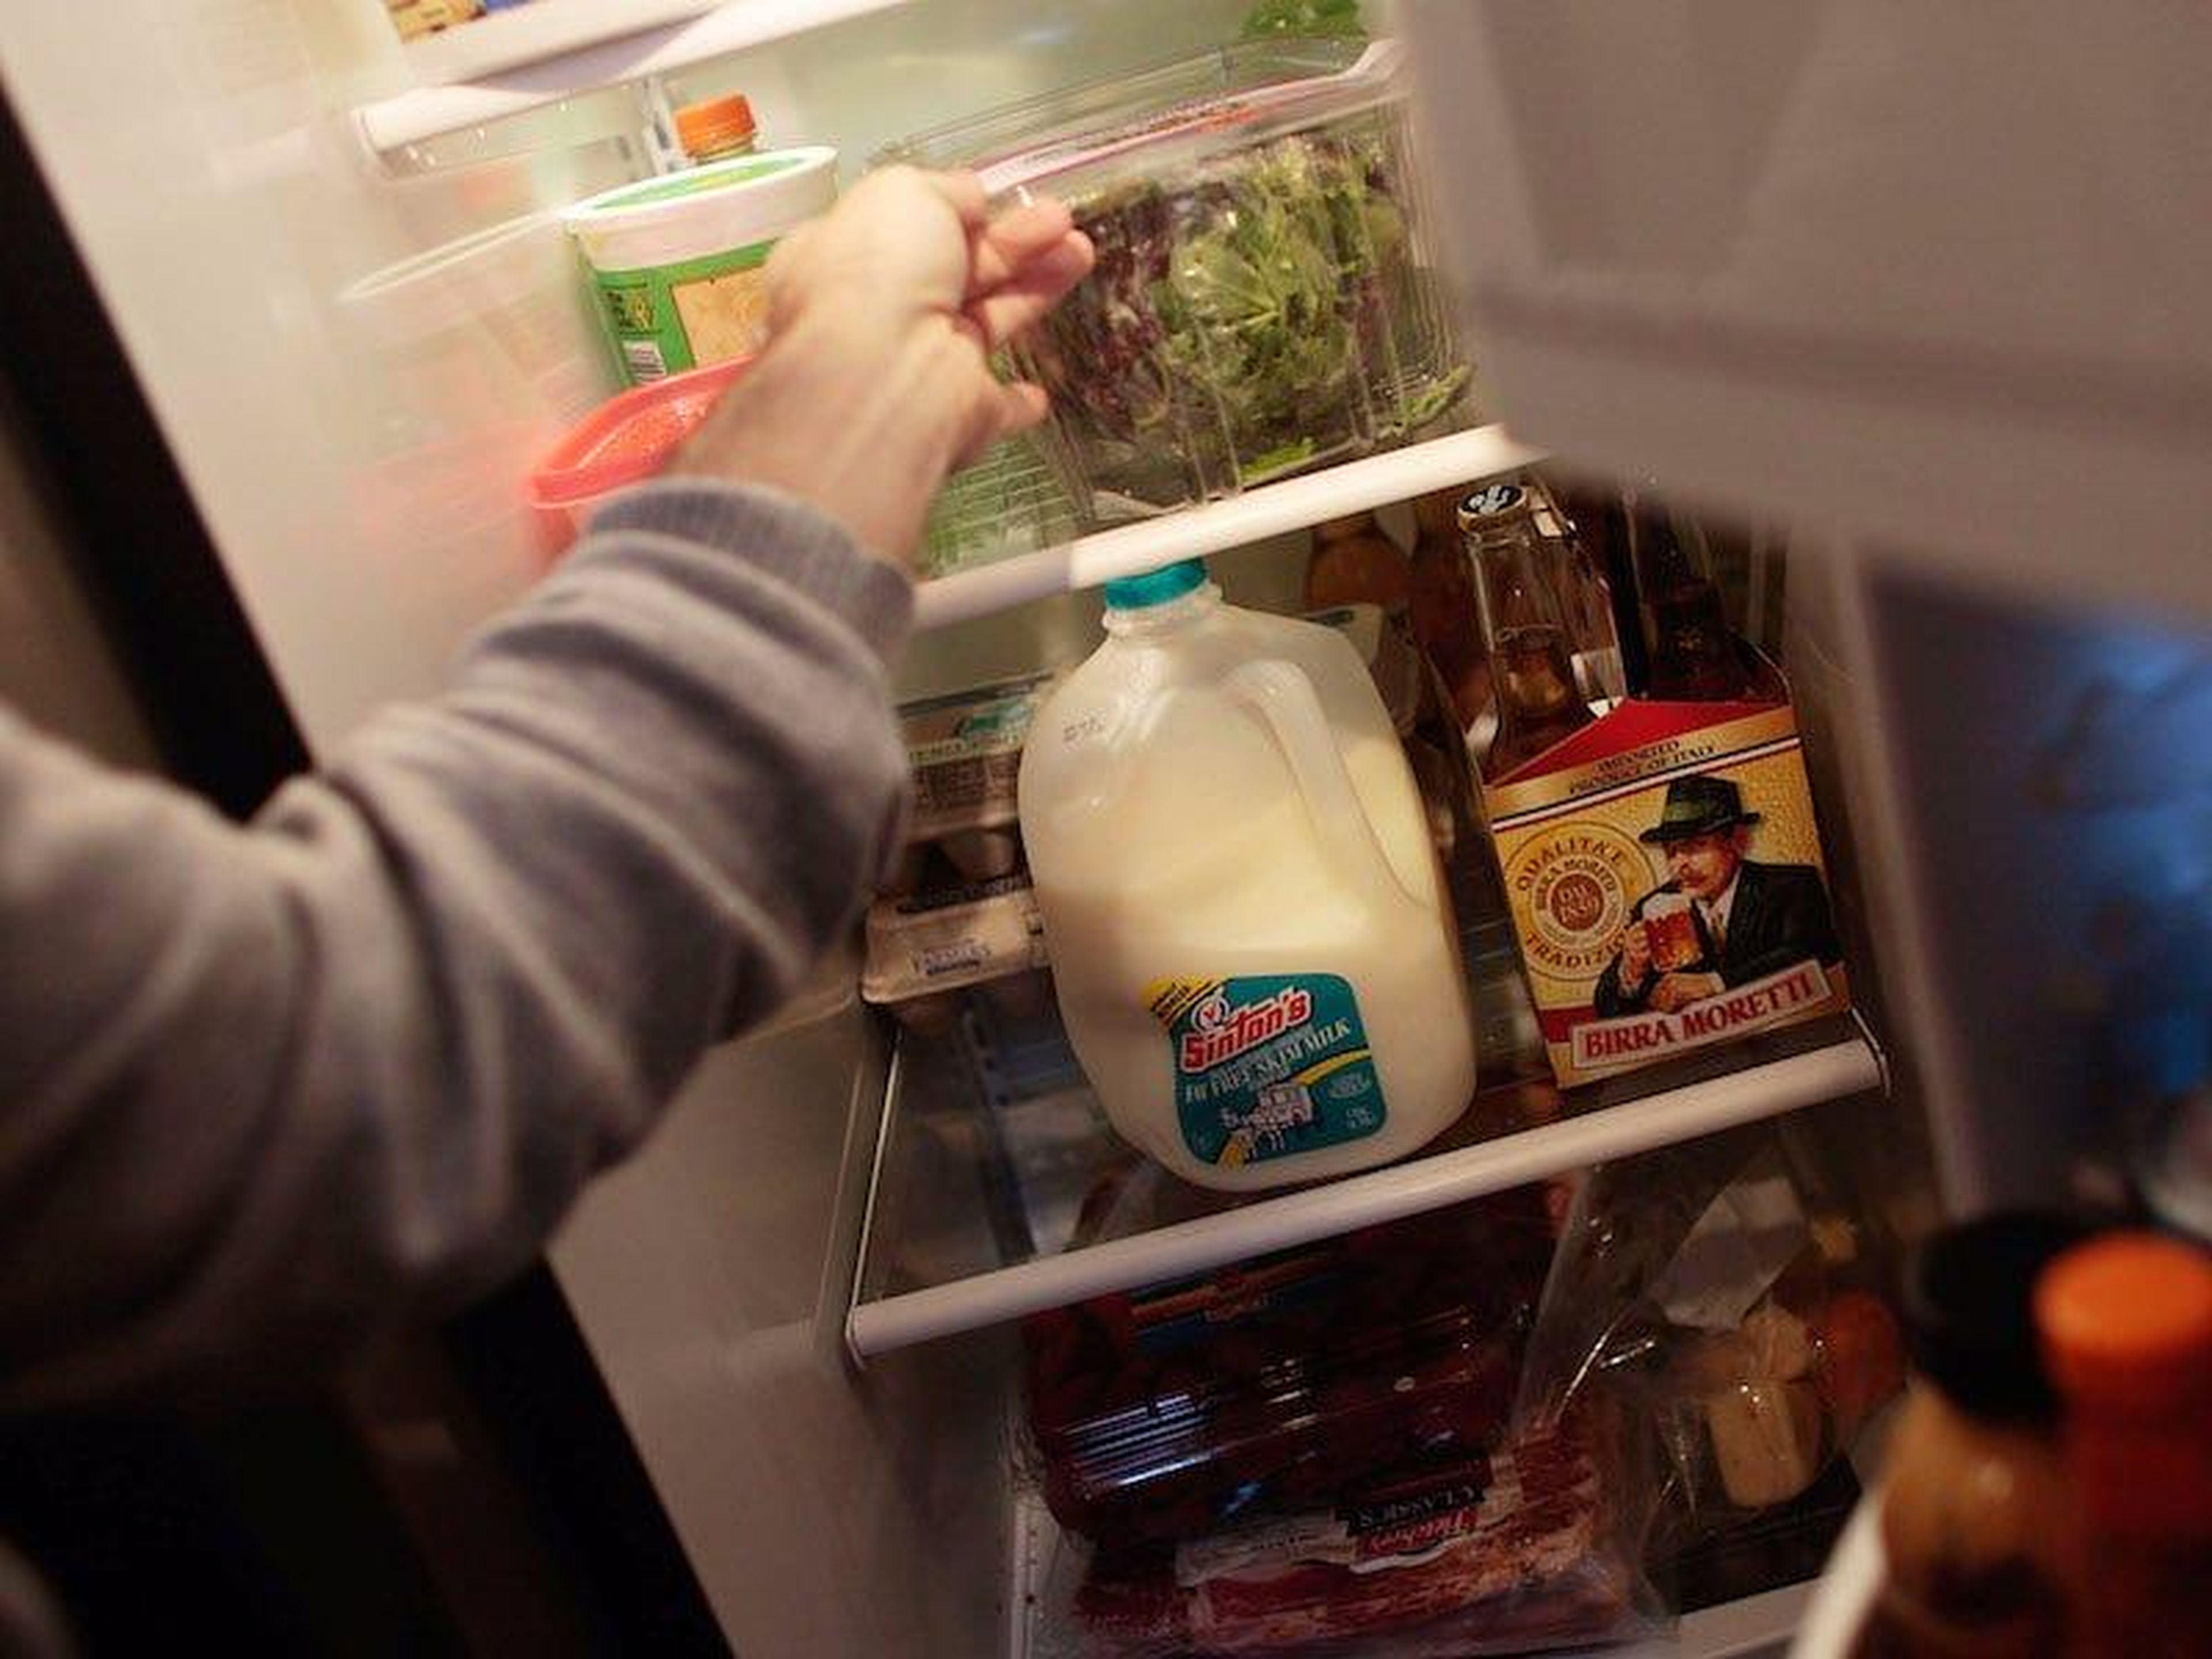 Lo más probable es que estés almacenando mal algunos alimentos.